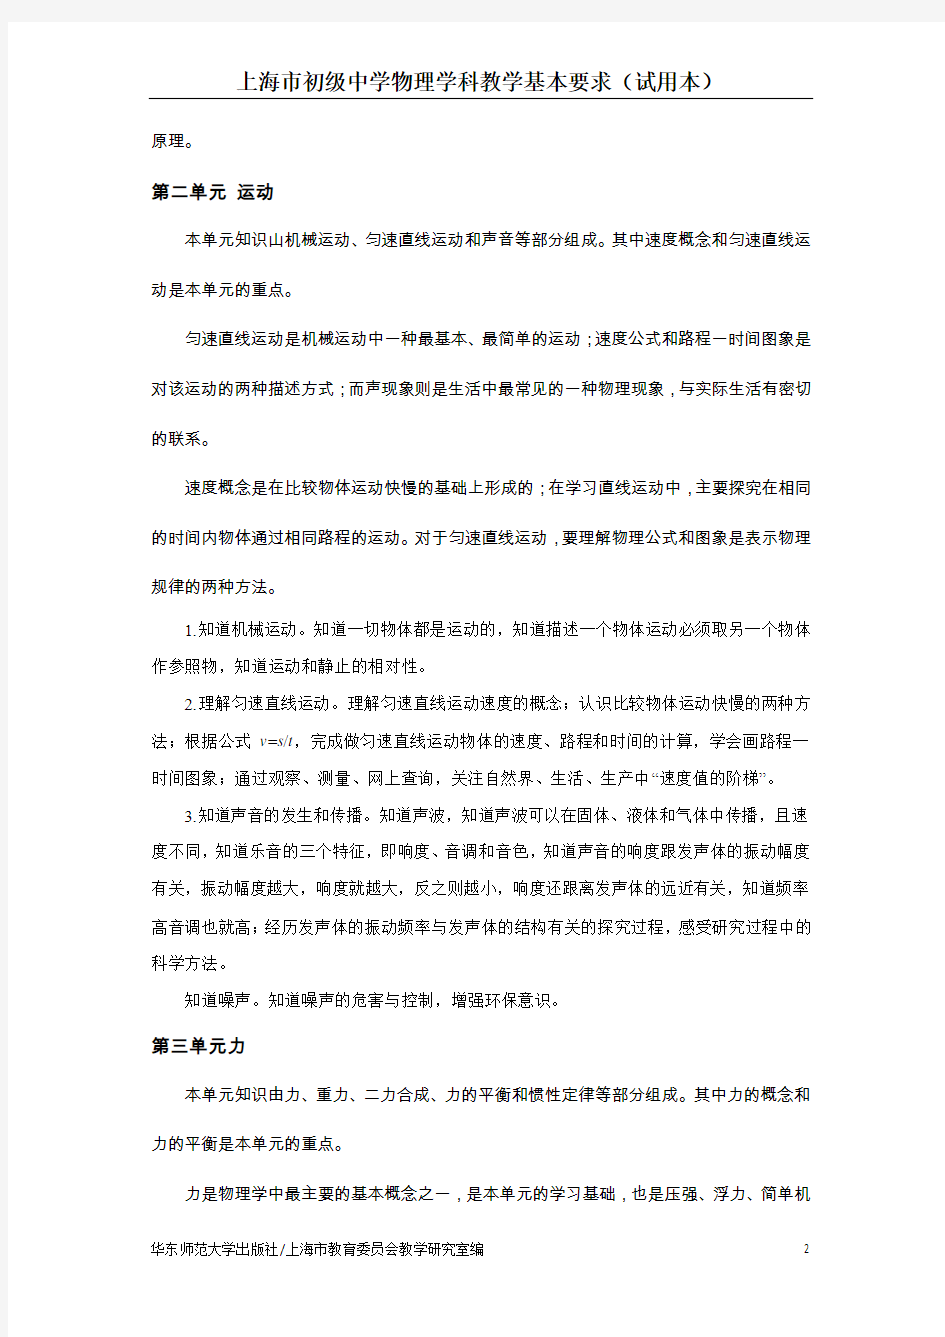 上海市初级中学物理学科教学基本要求(试用本)